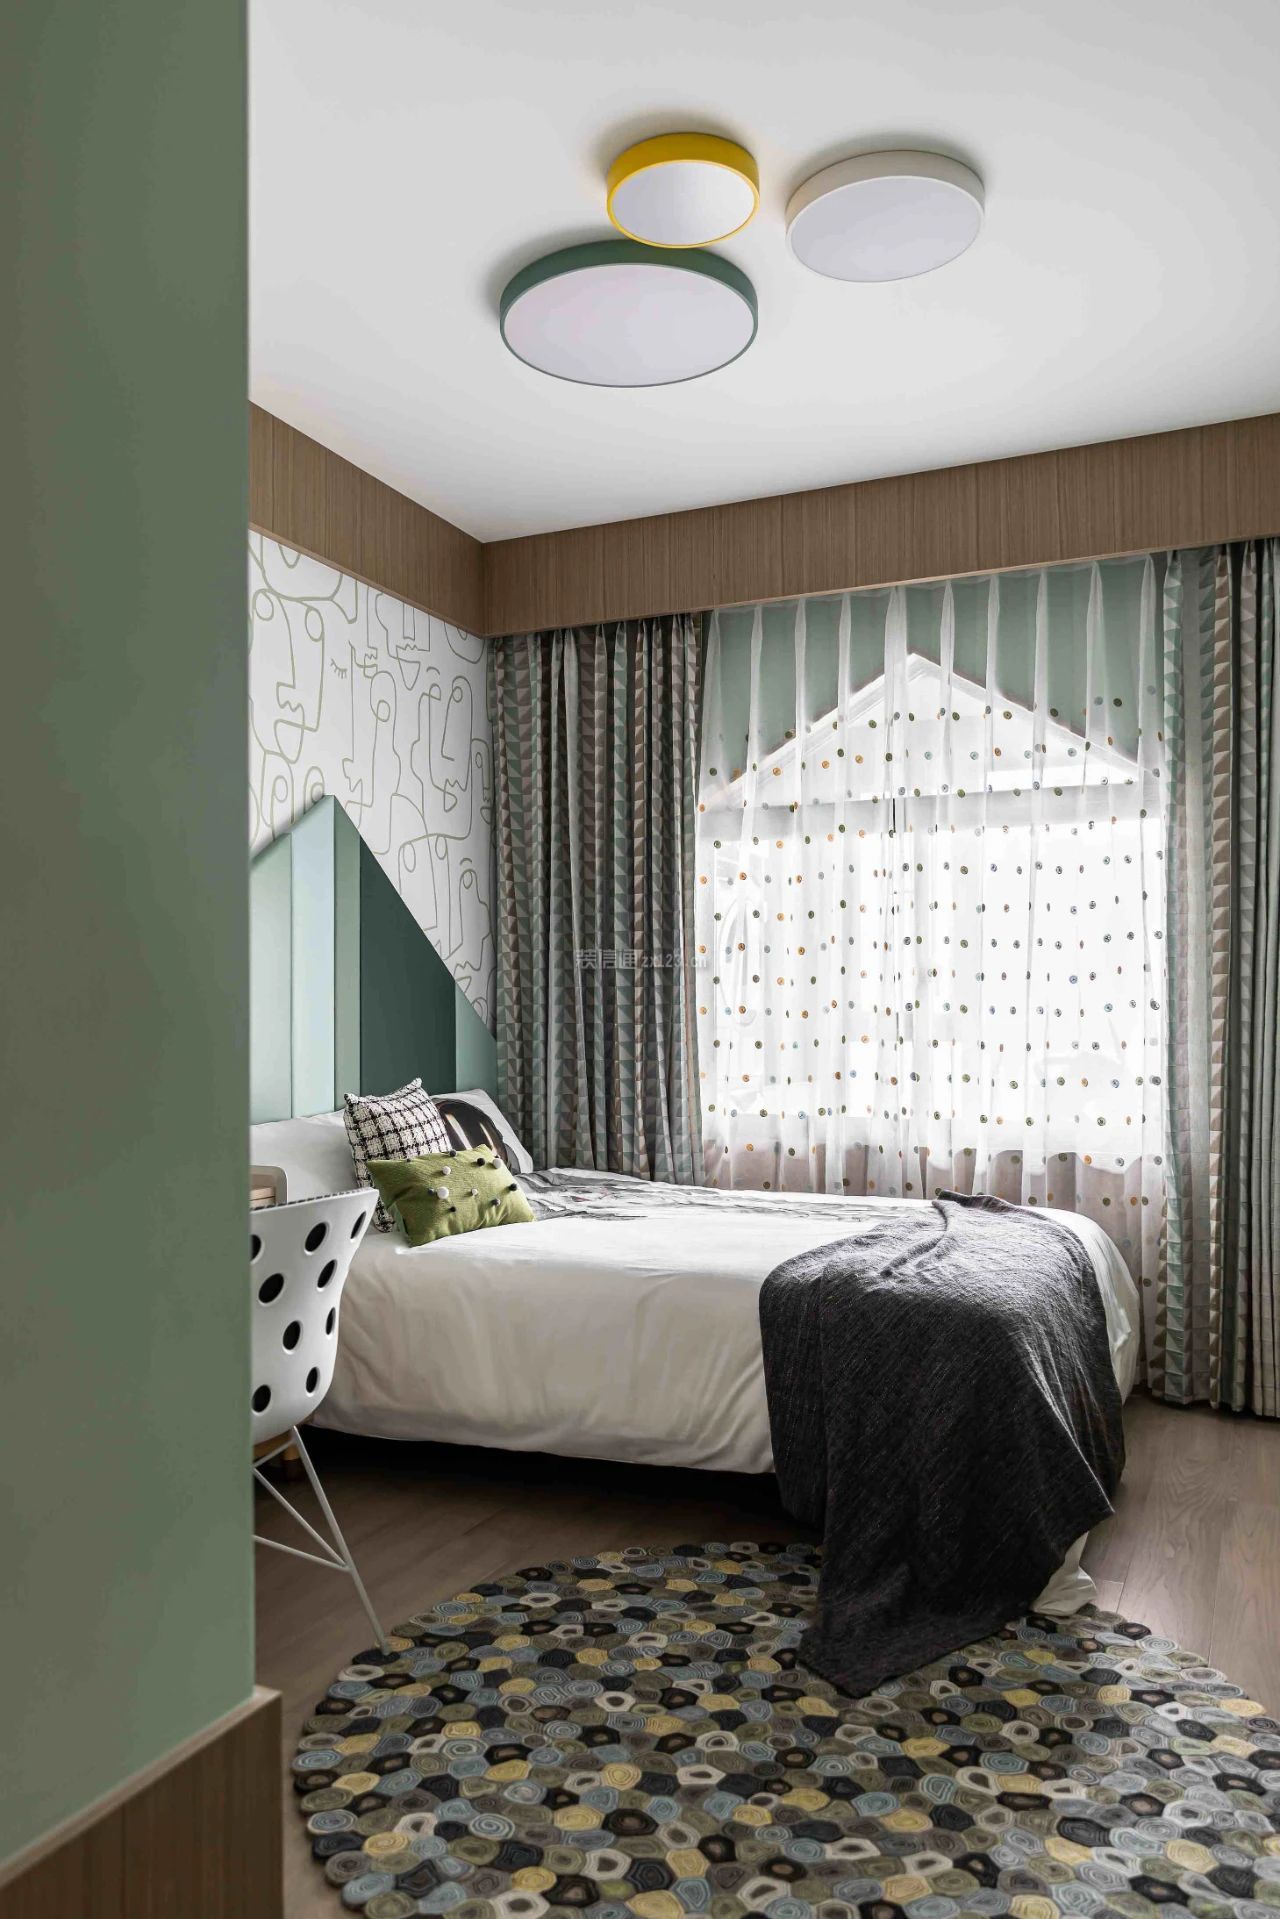 卧室窗帘效果图欣赏 卧室窗帘颜色设计